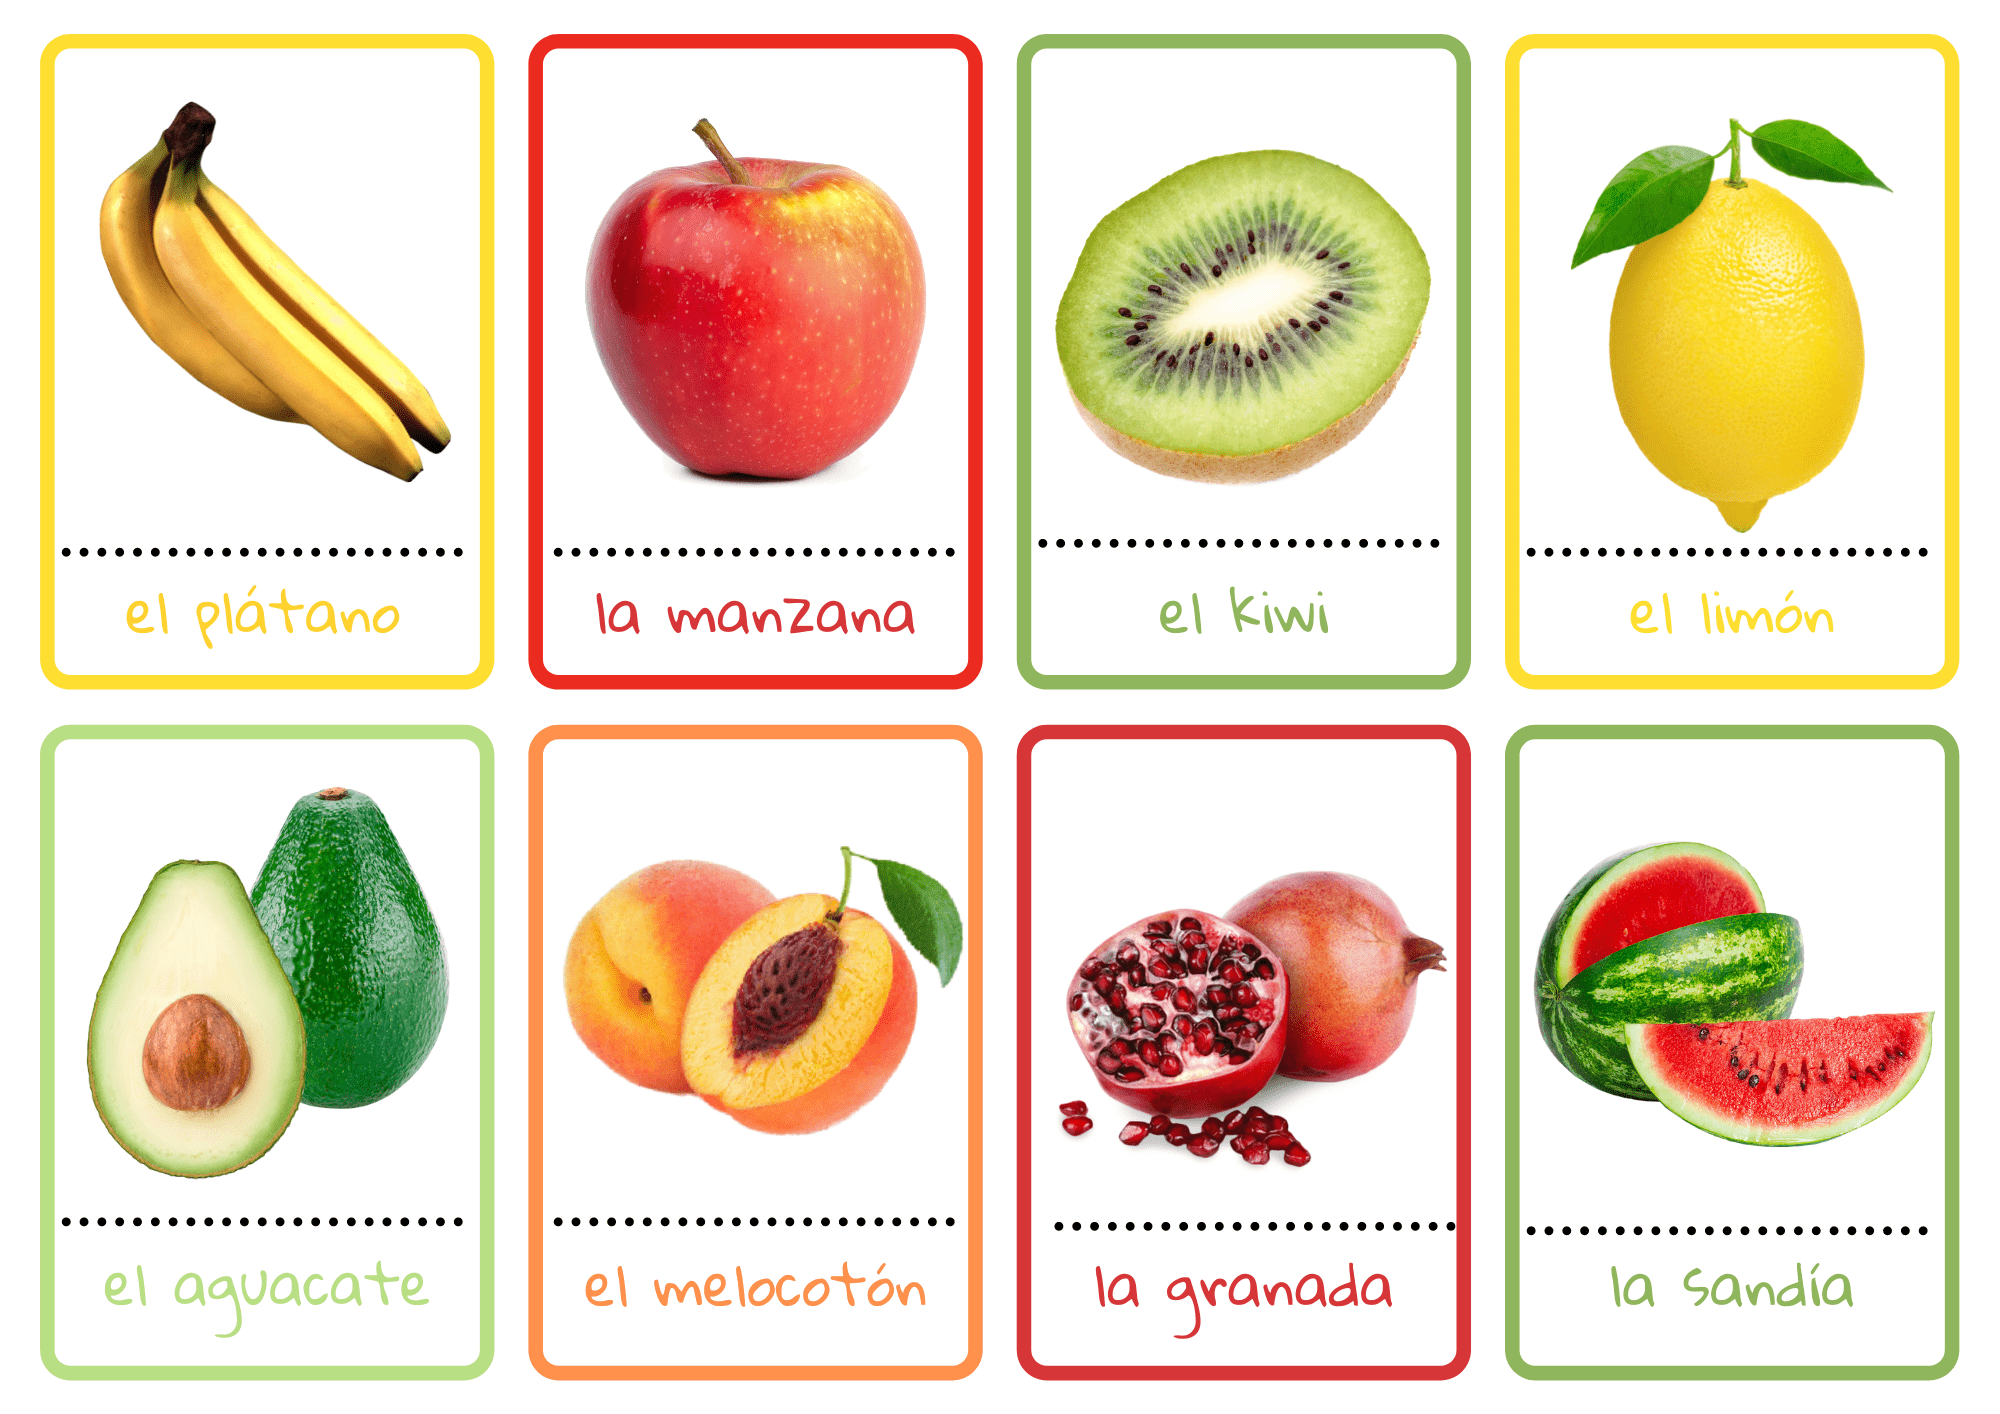 1hiszpanski owoce